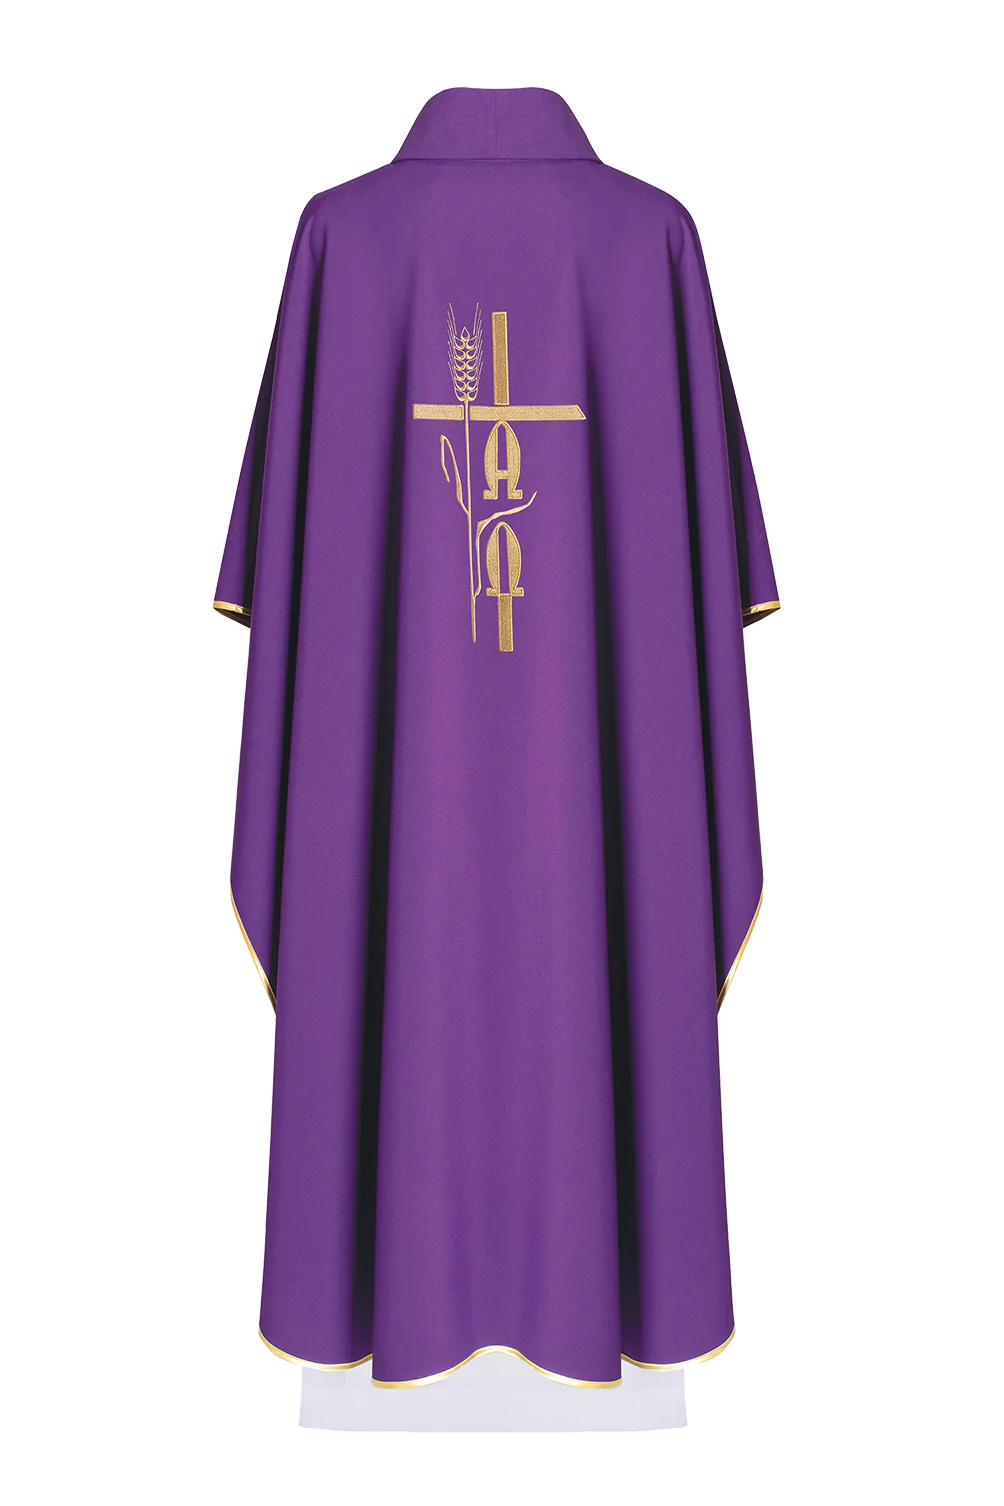 ornat fioletowy dla księdza zdobiony złotym symbolem Alfa Omega na plecach